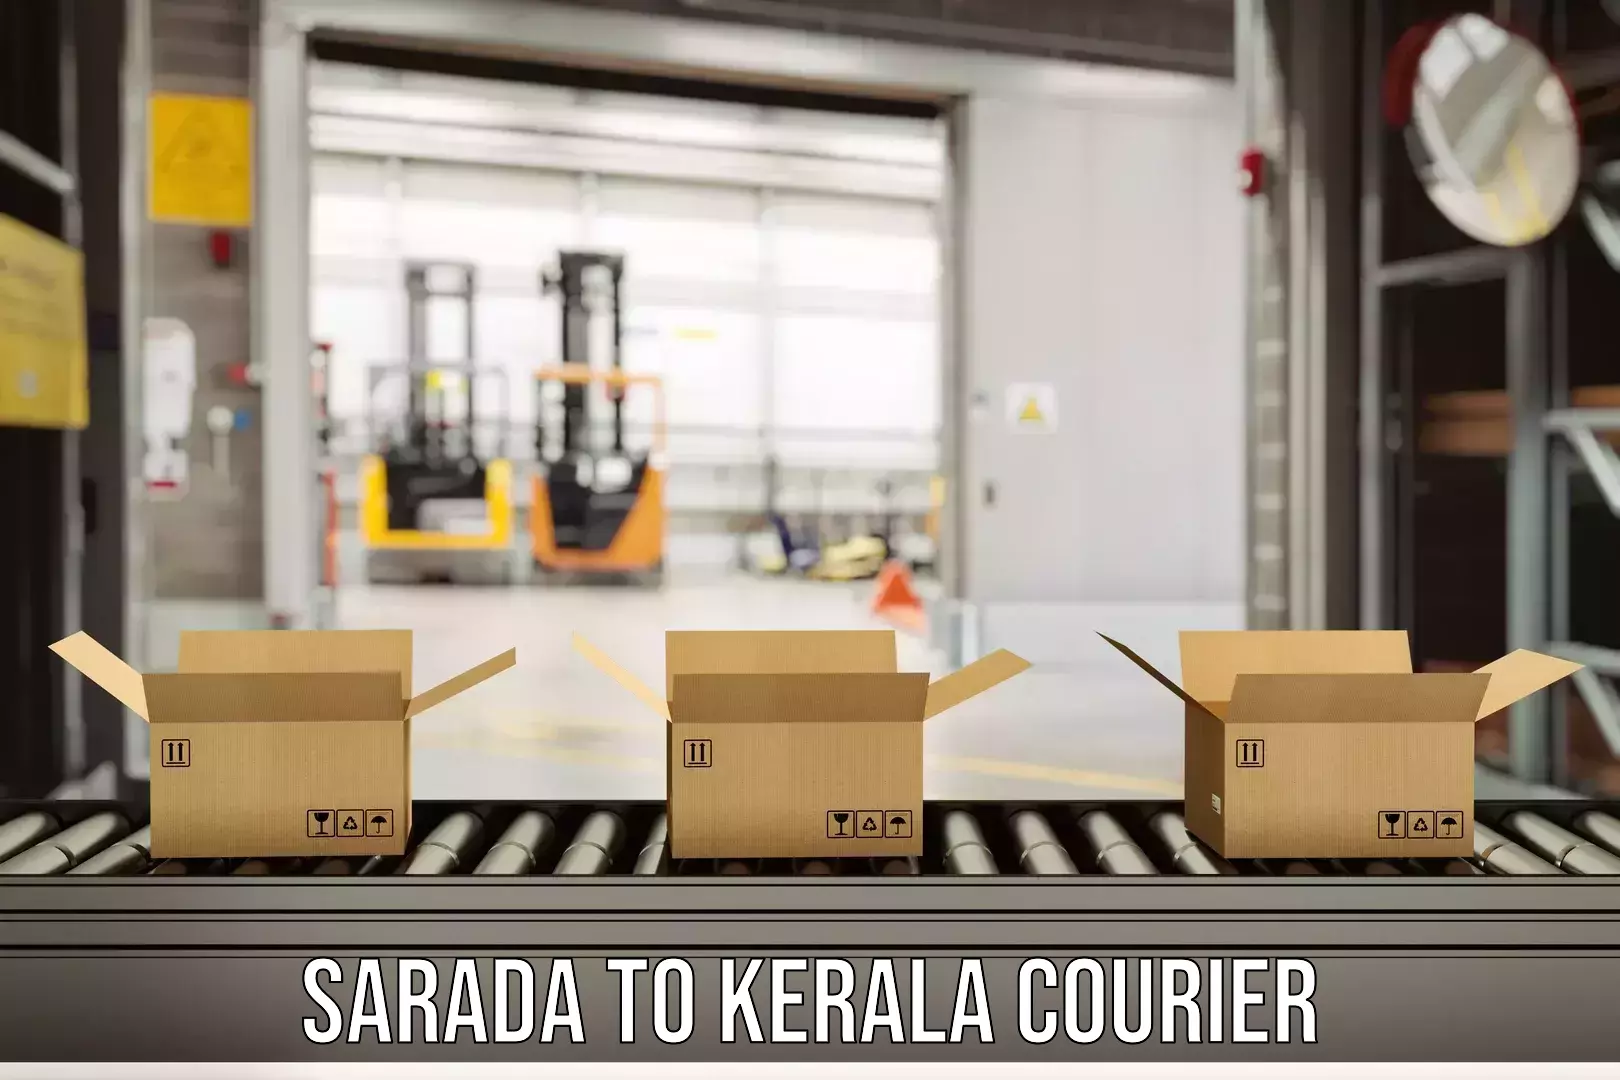 24-hour courier service Sarada to Kerala